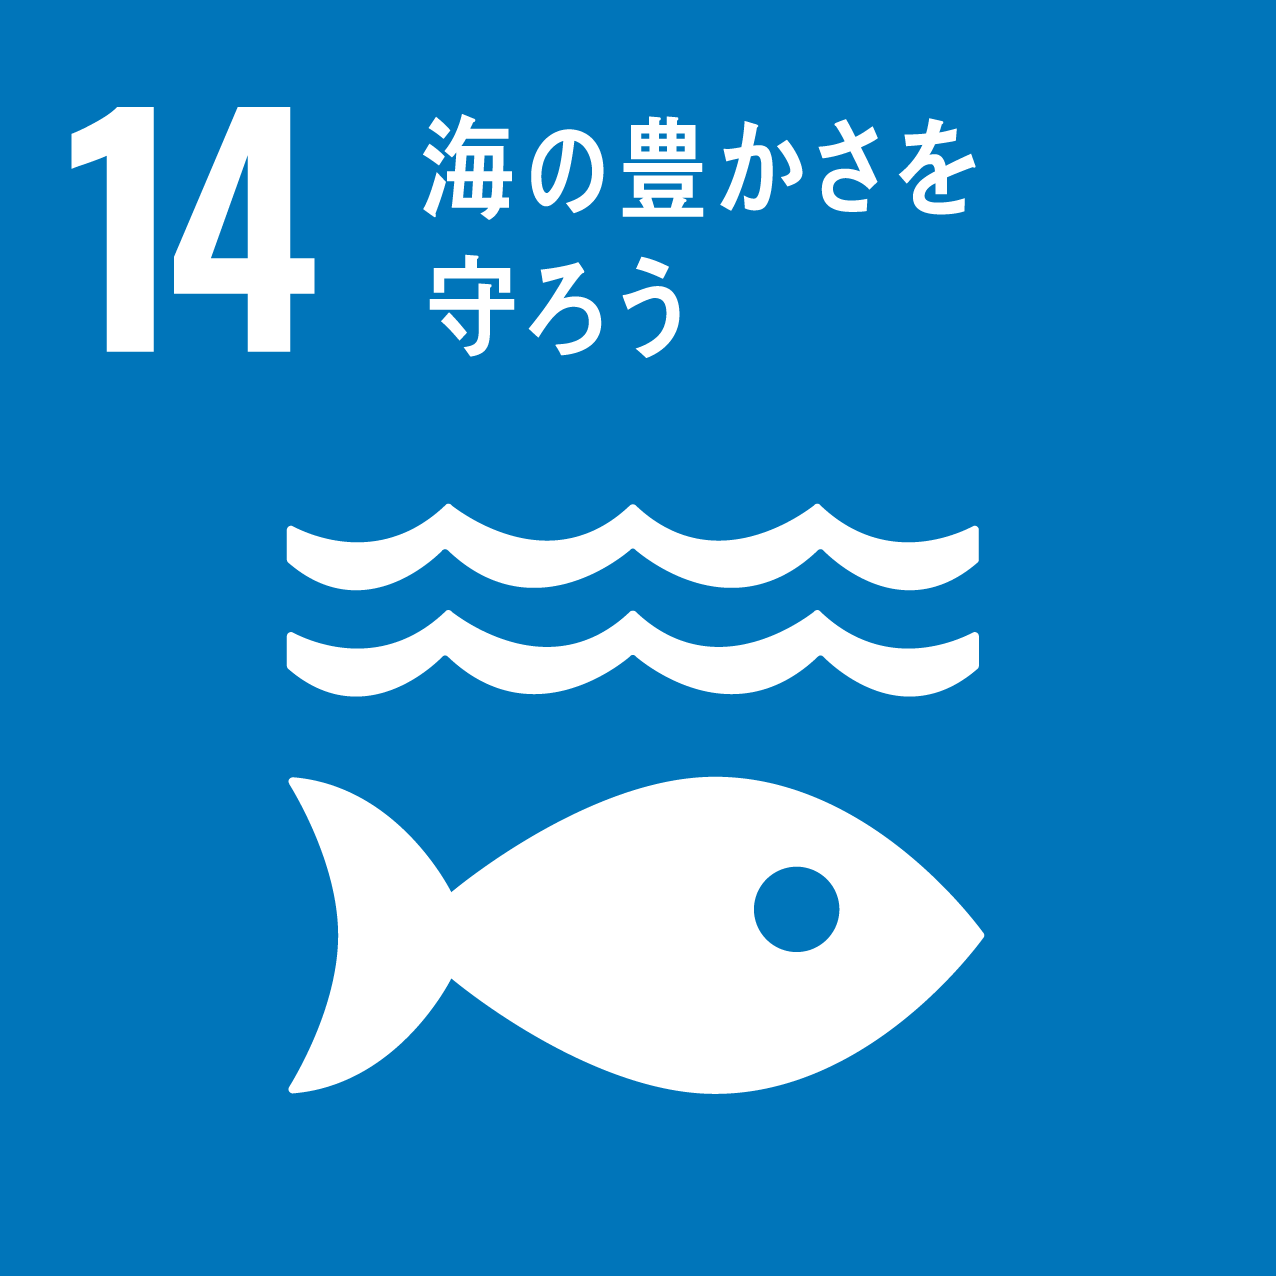 目標14【海の豊かさを守ろう】